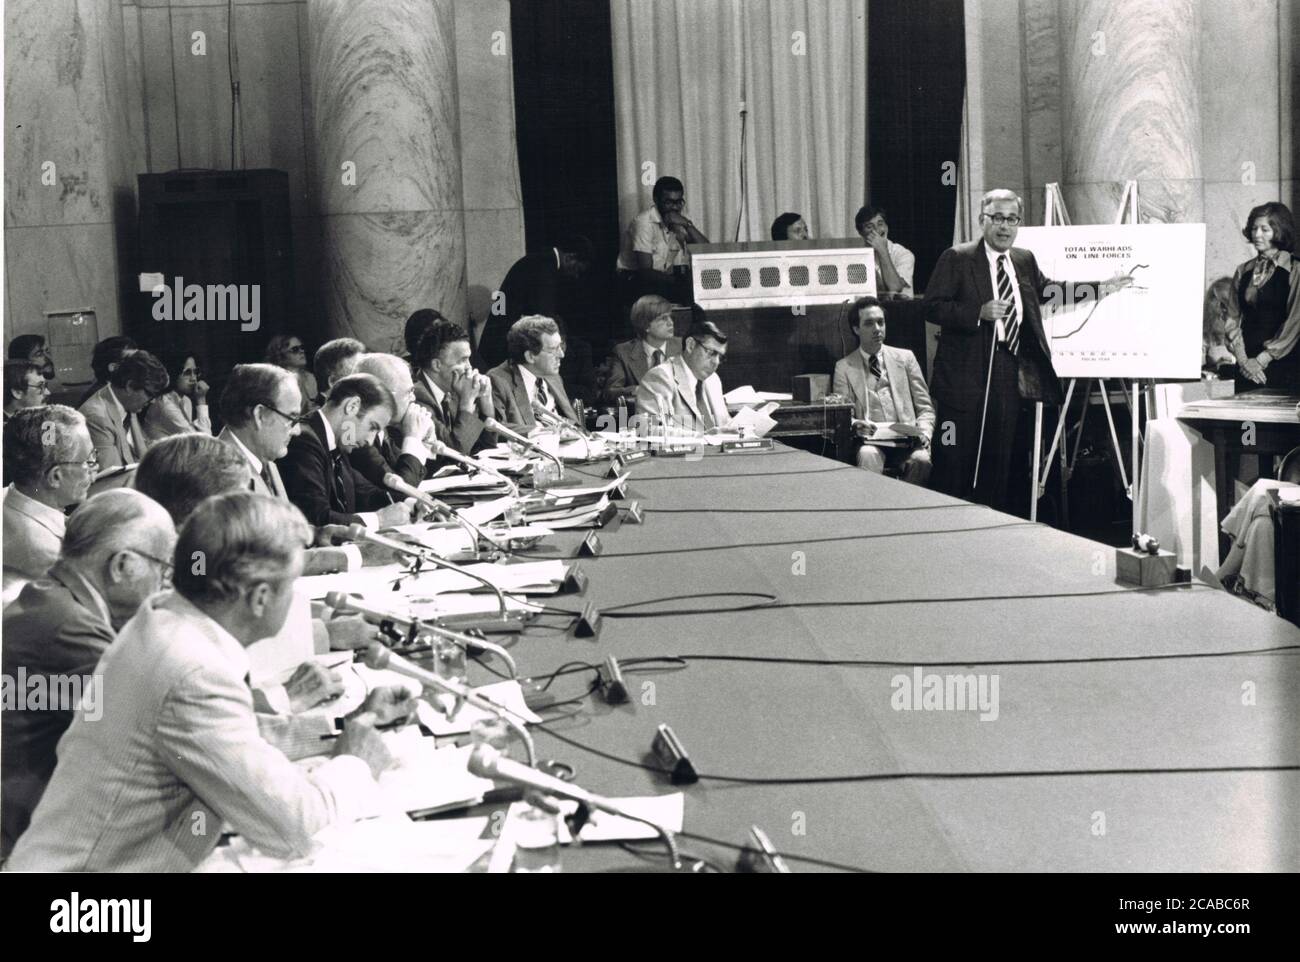 US-Verteidigungsminister Harold Brown, rechts, verwendet Diagramme, um den Aufbau von US- und sowjetischen Raketen während des dritten Tages der Anhörungen zum SALT II-Vertrag vor dem US-Senatsausschuss für Auswärtige Beziehungen auf dem Capitol Hill in Washington, DC am 11. Juli 1979 zu veranschaulichen. US-Senator Joseph Biden (Demokrat von Delaware) notiert sich links, während er Browns Aussage zuhört. Andere erkennbare Senatoren auf dem Foto sind US-Senator George McGovern (Demokrat von South Dakota) und Edmund Muskie (Demokrat von Maine).Quelle: Benjamin E. 'Gene' Forte / CNP / MediaPunch Stockfoto